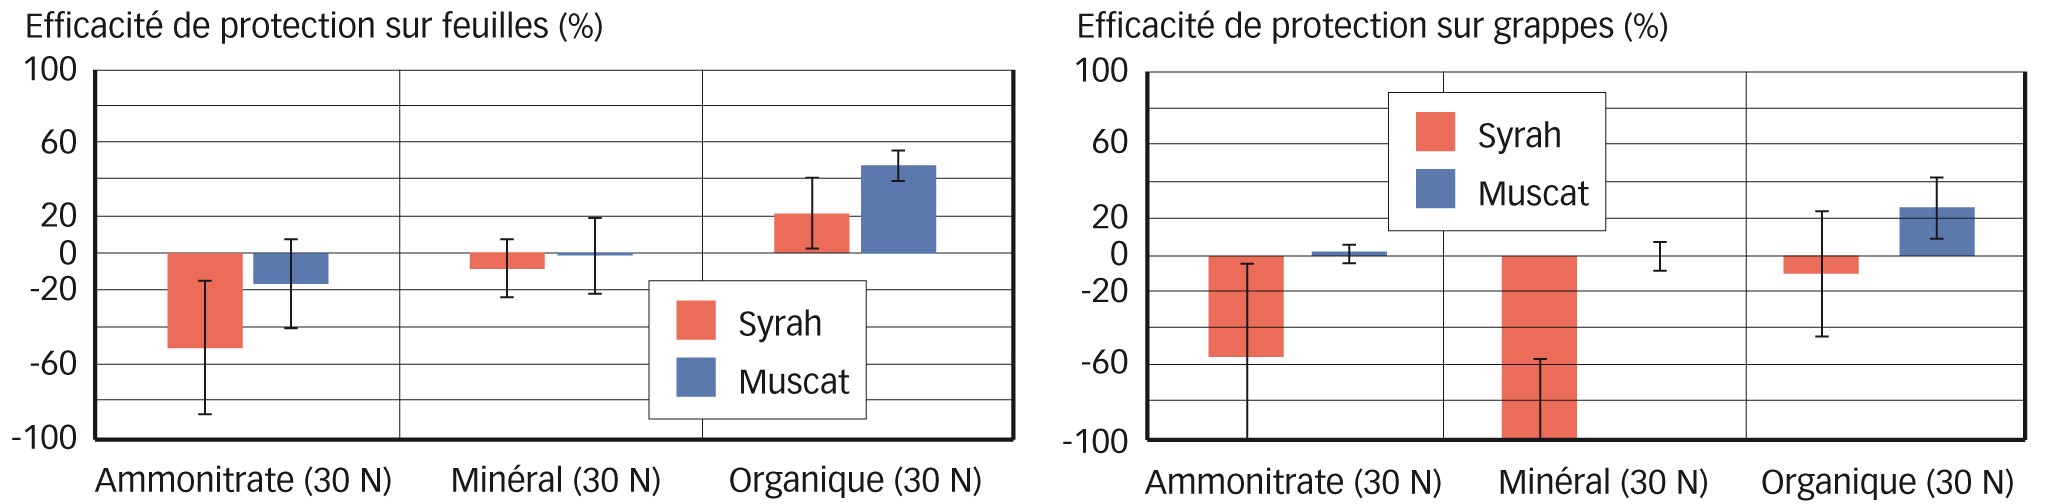 Fig. 3 : Effet de la fertilisation organique et minérale sur le contrôle du champignon pathogène Plasmopara viticola (mildiou) sur deux cépages de vigne cultivés (Aude)       Fertilisant organique = Orga (N-P-K 3-2-3 avec 50 % de matière organique compostée avec fumier (35 %), laines (10 %) et tourteaux végétaux (55 %), Frayssinet). Fertilisants minéraux = engrais minéral (N-P-K 17-8-12) et ammonitrate (N-P-K 33,5-0-0) comme référence azotée. Afin de suivre l'impact des fertilisants sur les maladies, un témoin non fertilisé sert de base de calcul au référentiel (ligne de base). Essai en blocs de Fisher (n = 4). Notation effectuée à la nouaison (BBCH 71), intensité du mildiou de 5 % et 7,5 %, respectivement sur muscat et syrah. 